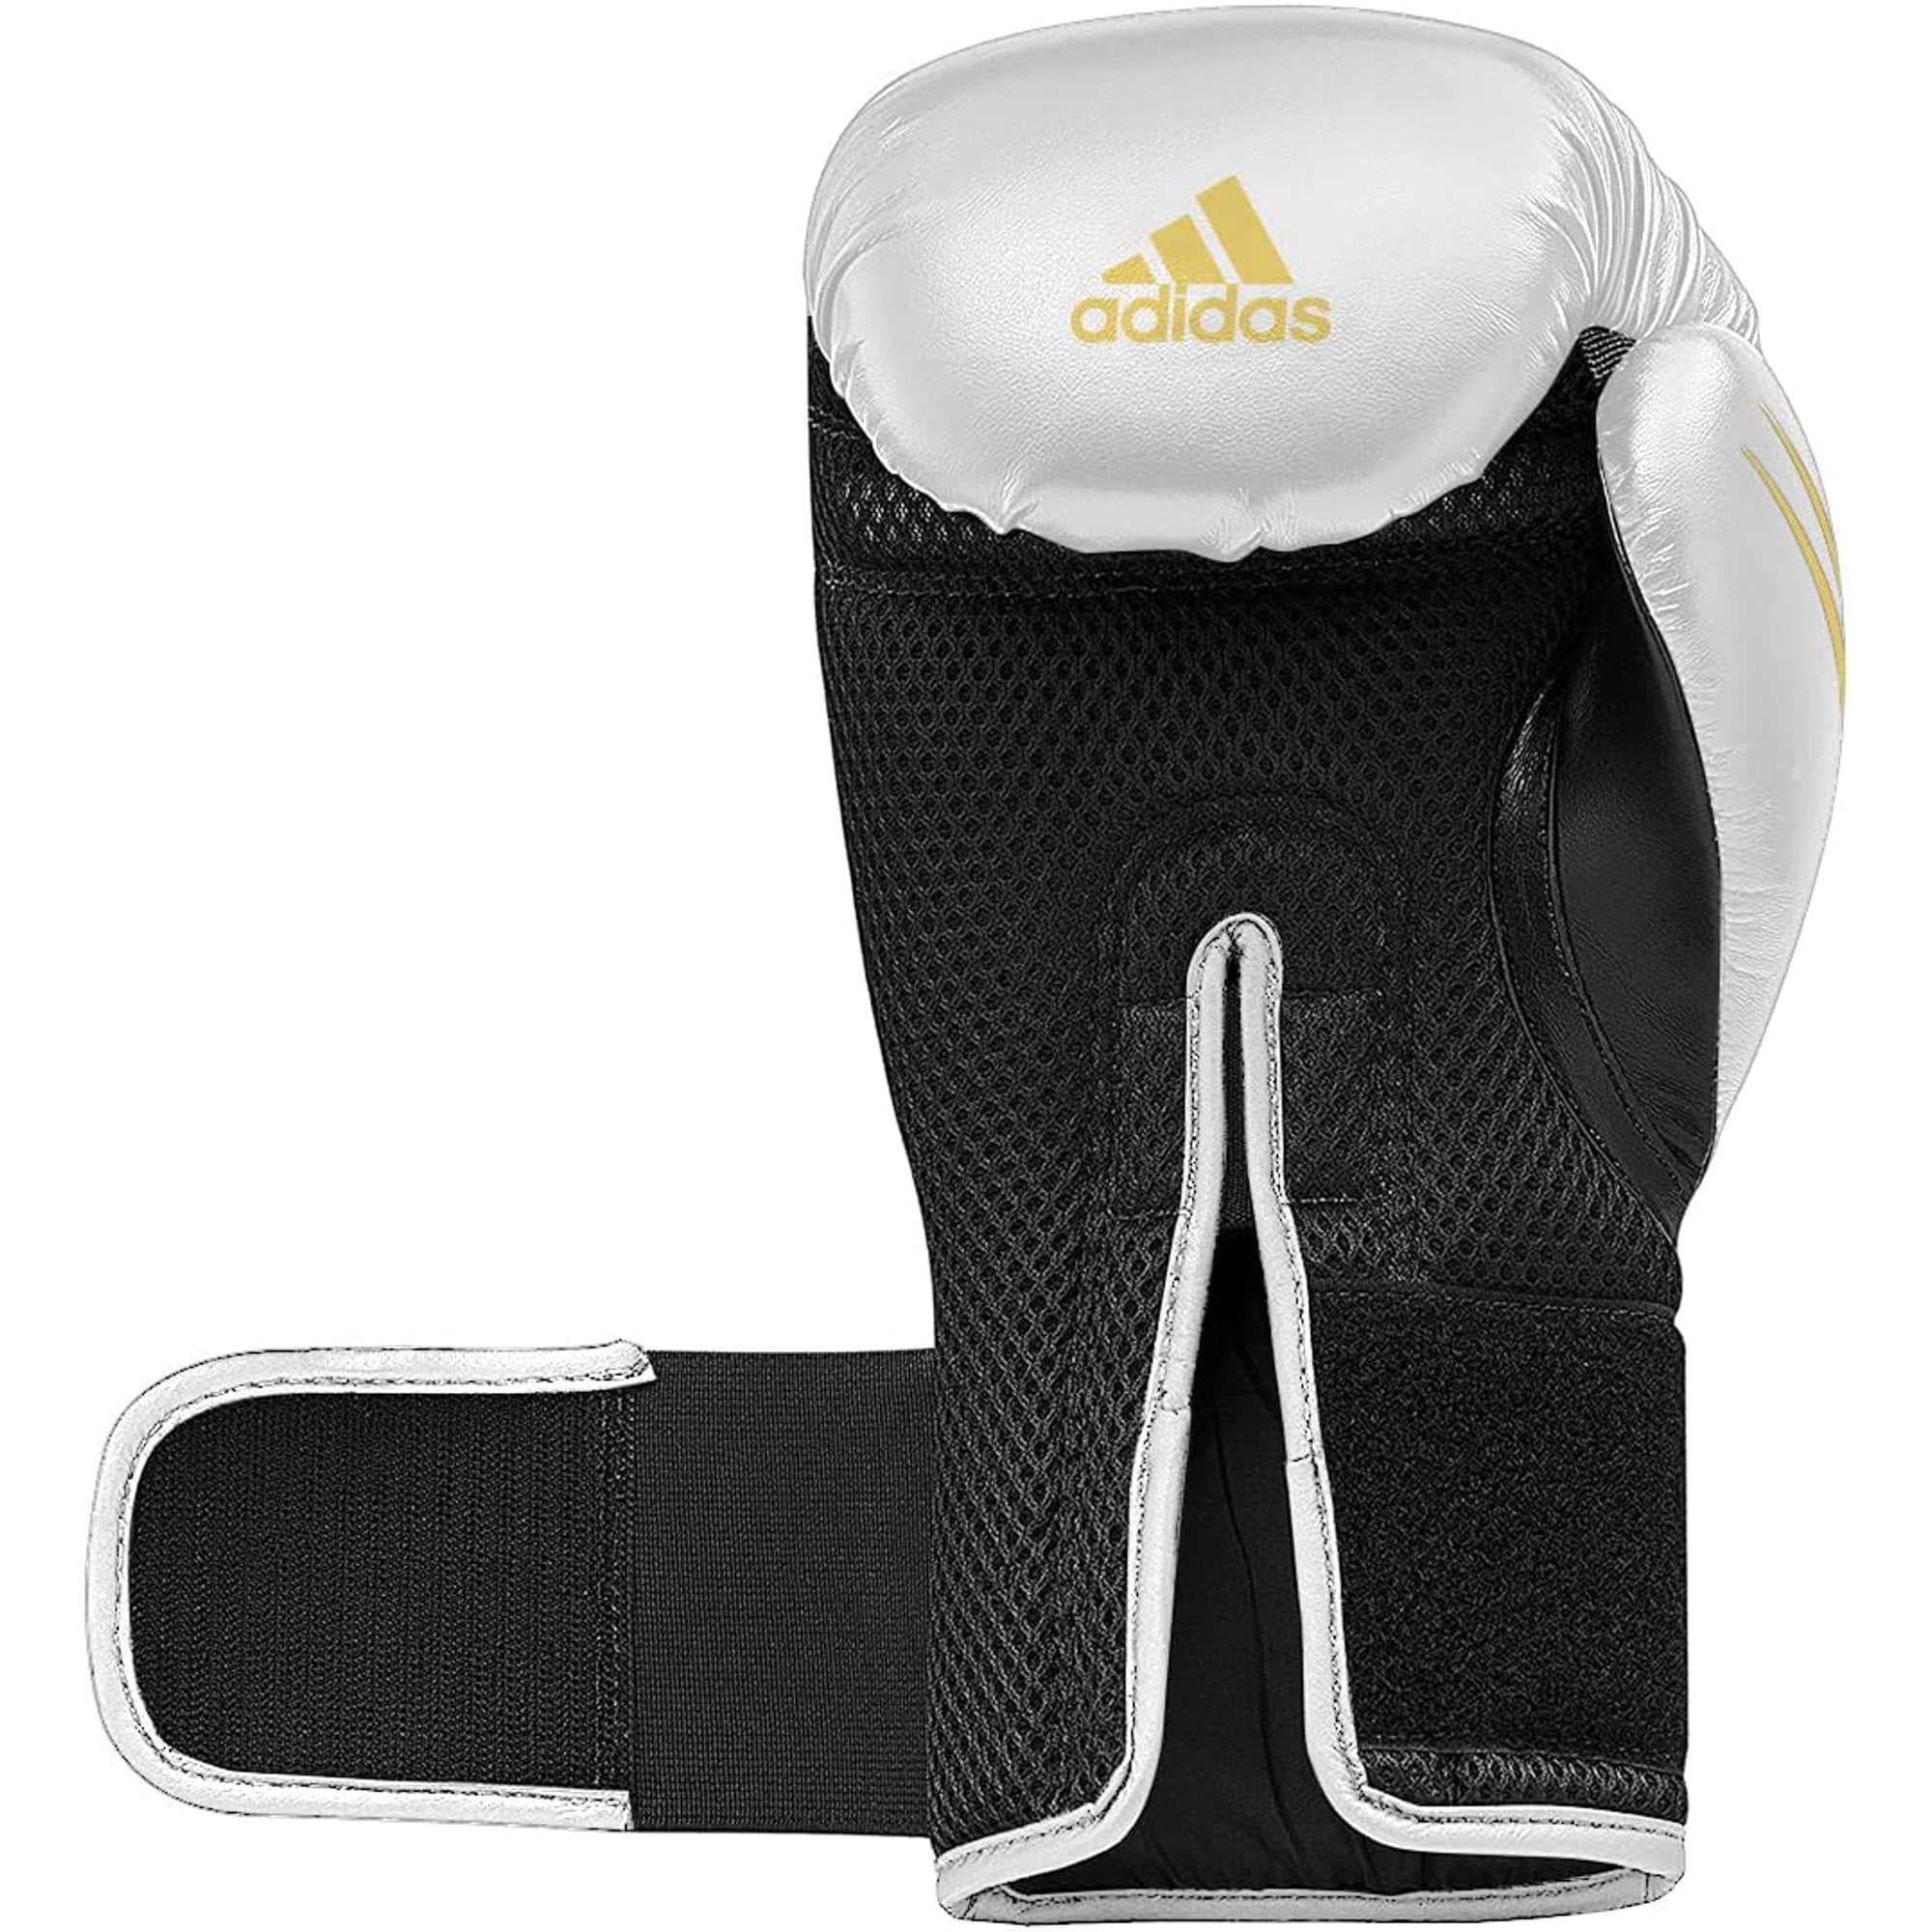 Adidas Speed TILT 150 Boxing Gloves - Training and Fighting Gloves for Men,  Women, Unisex, White/Gold/Black, 10oz